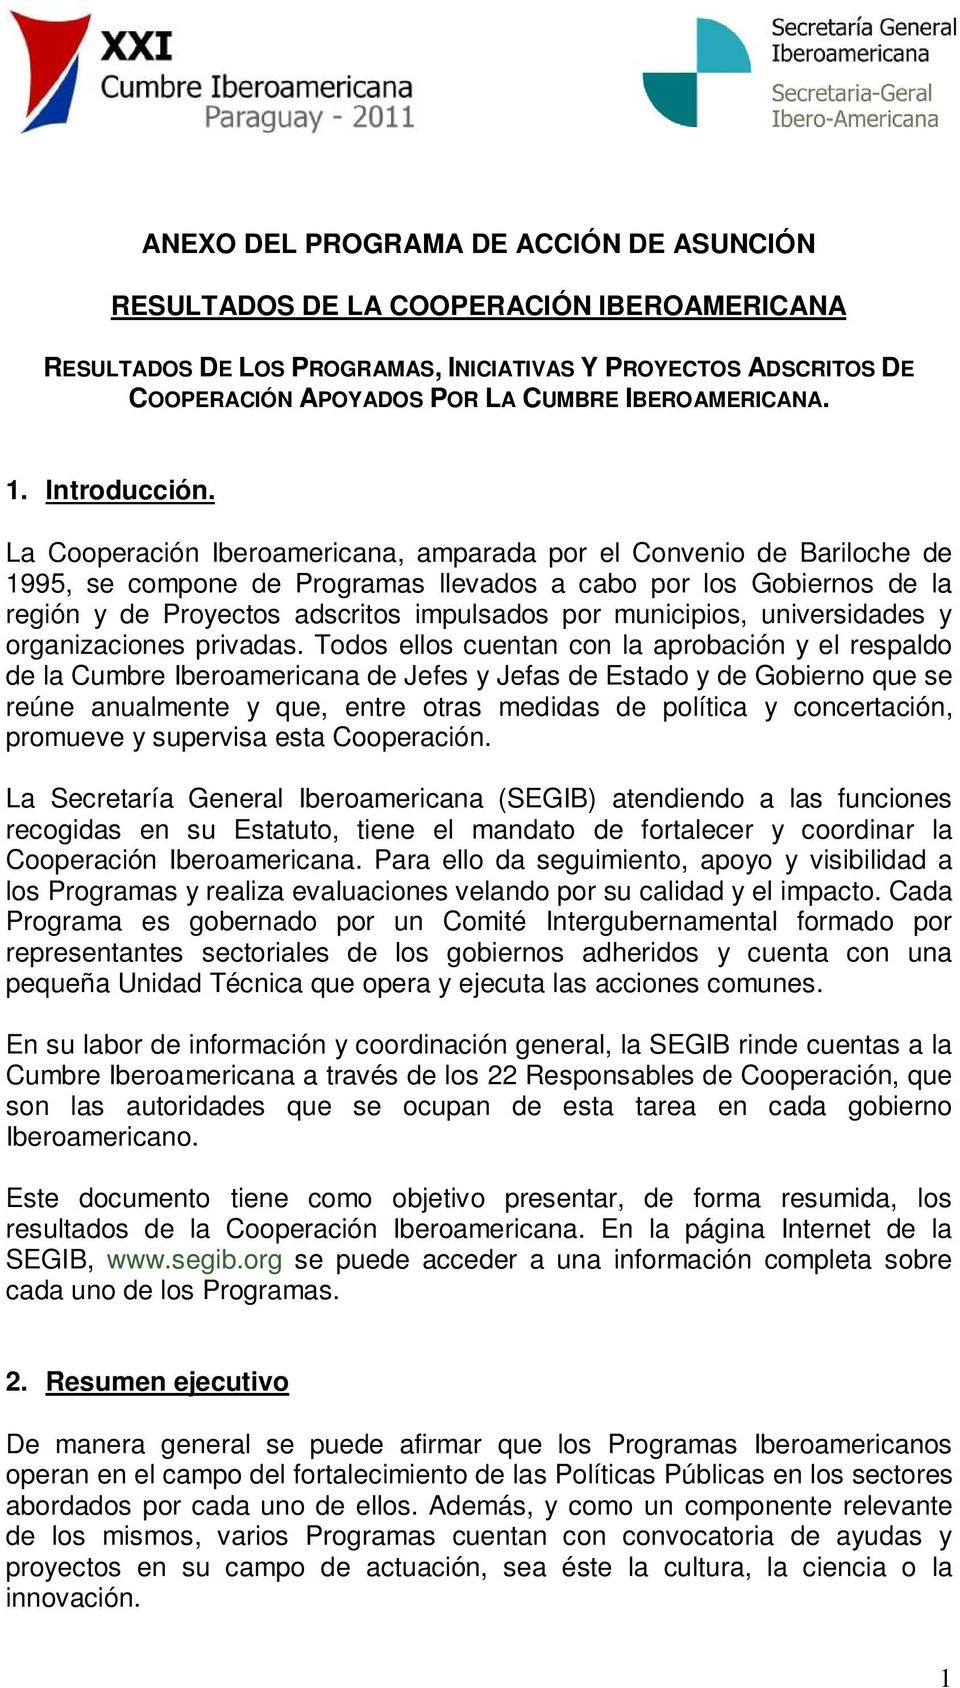 La Cooperación Iberoamericana, amparada por el Convenio de Bariloche de 1995, se compone de Programas llevados a cabo por los Gobiernos de la región y de Proyectos adscritos impulsados por